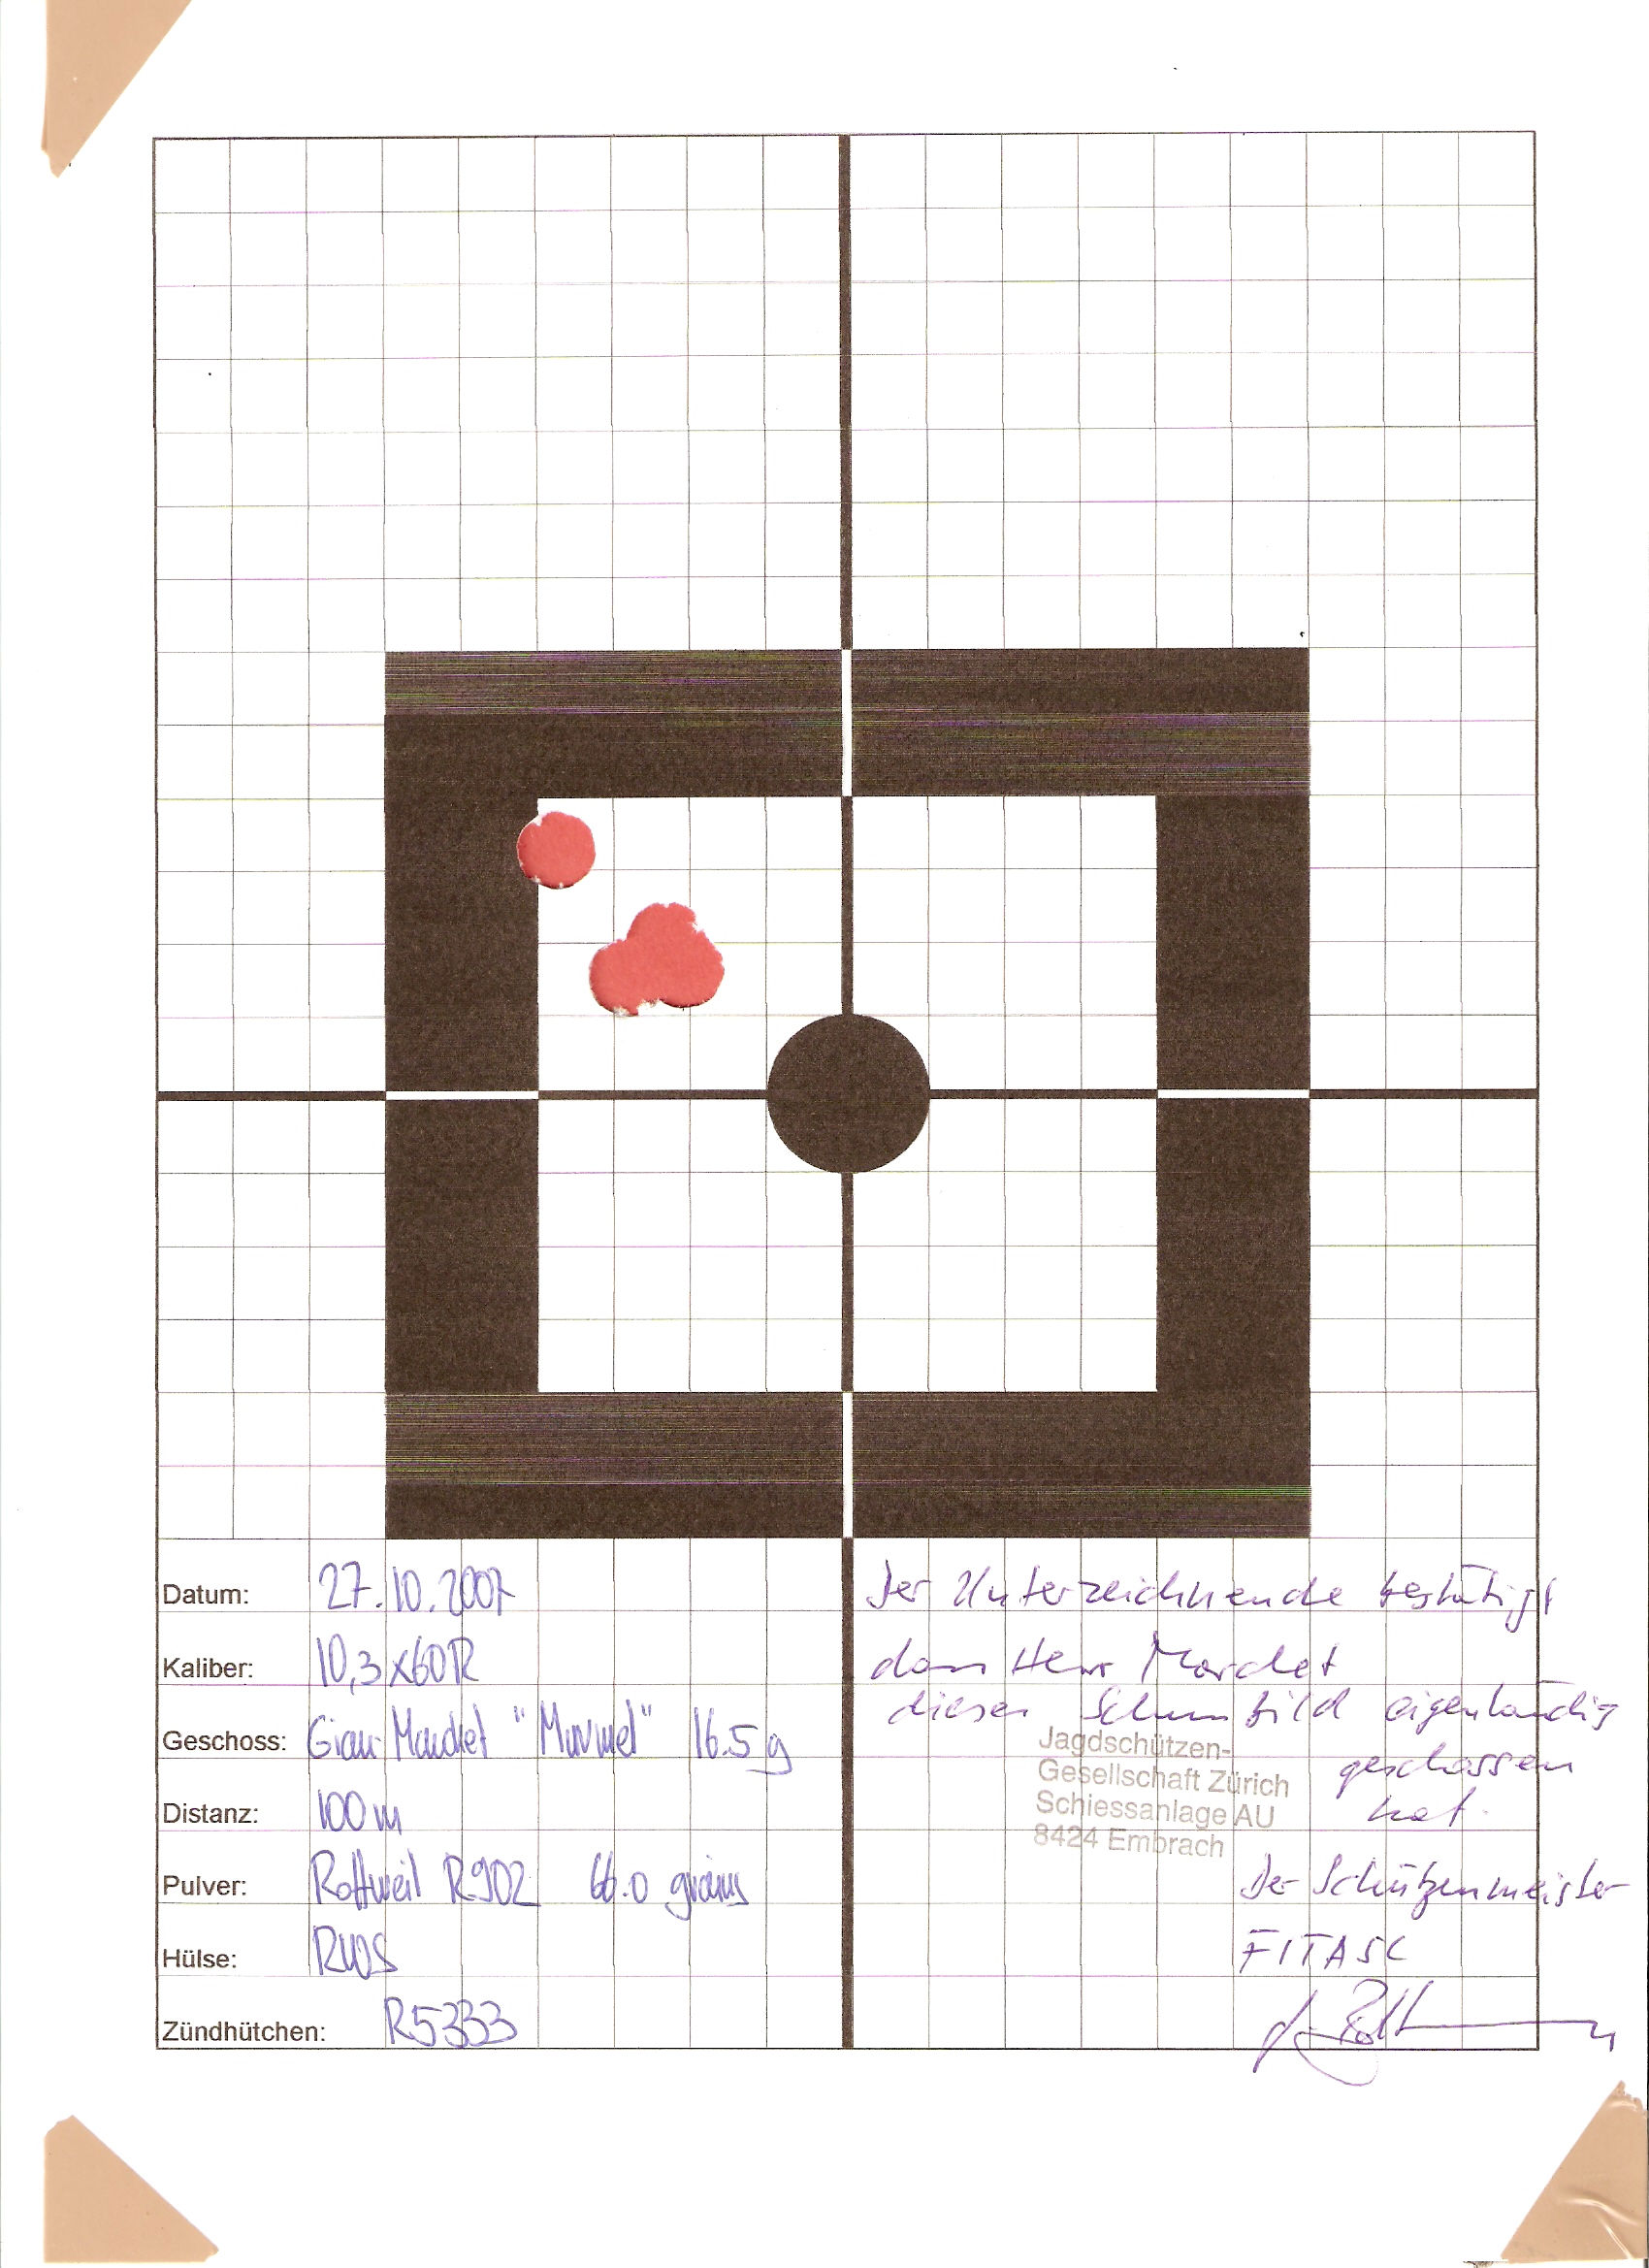 Auch sehr hohe Präzision mit der Gian-Marchet® "Murmel" - 4 Schuss auf 100 Meter Distanz innerhalb von 22 mm...